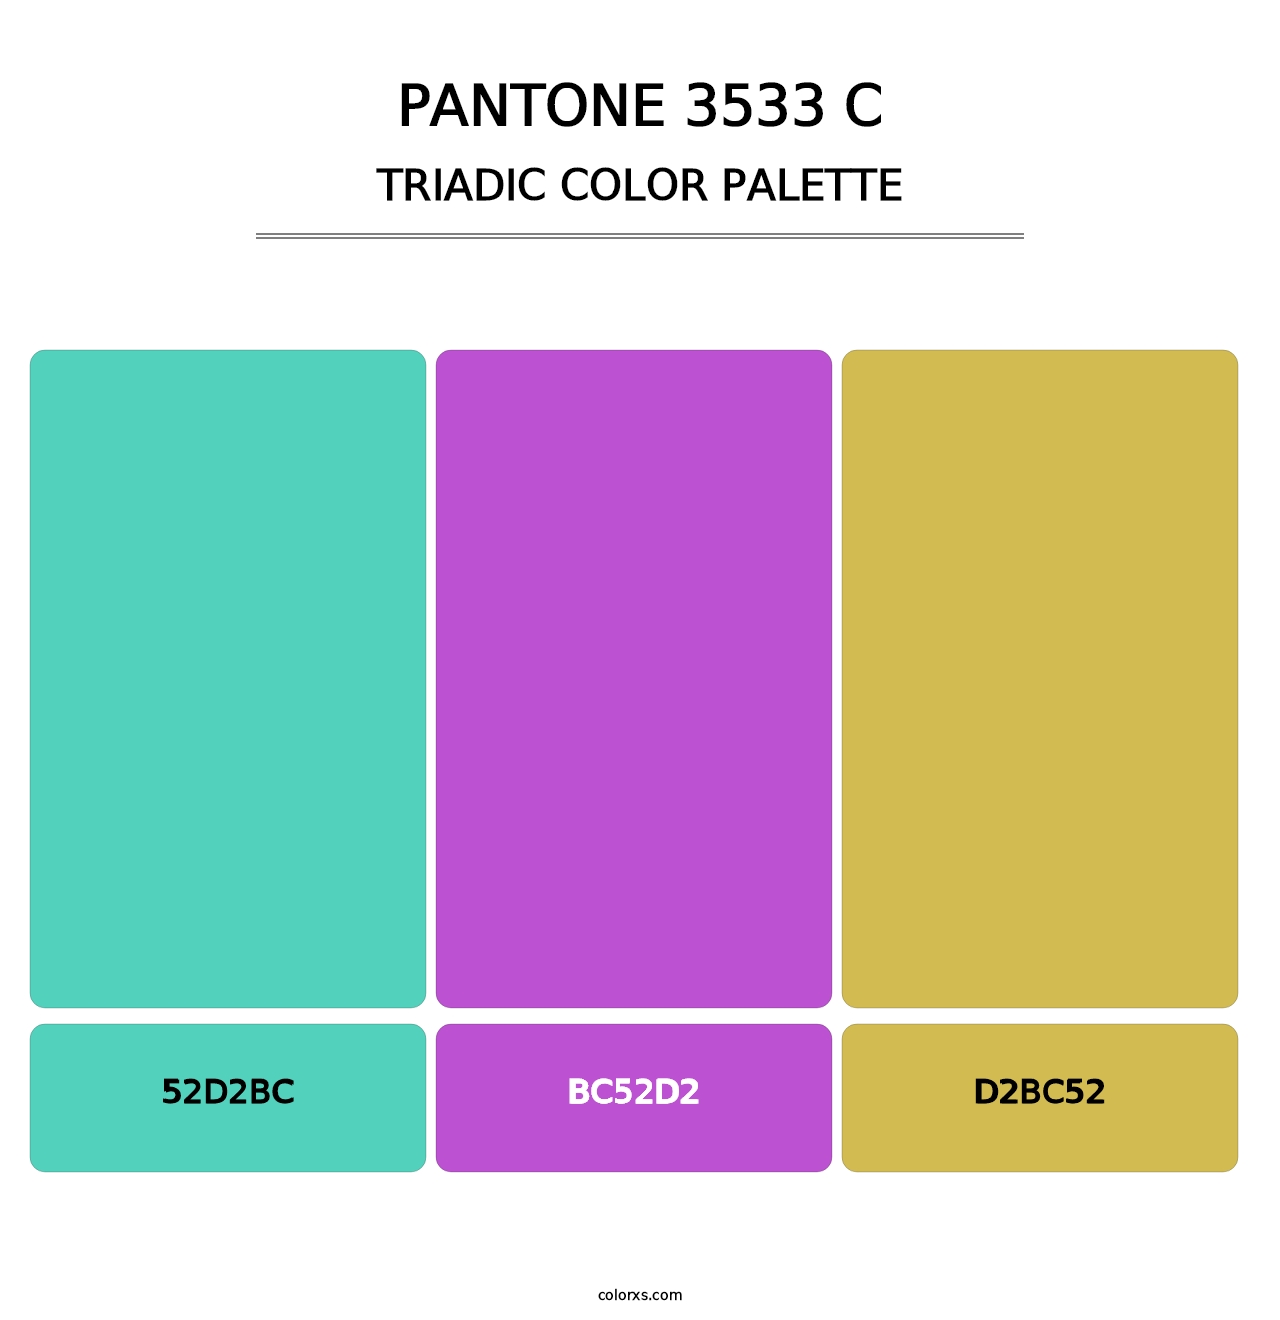 PANTONE 3533 C - Triadic Color Palette